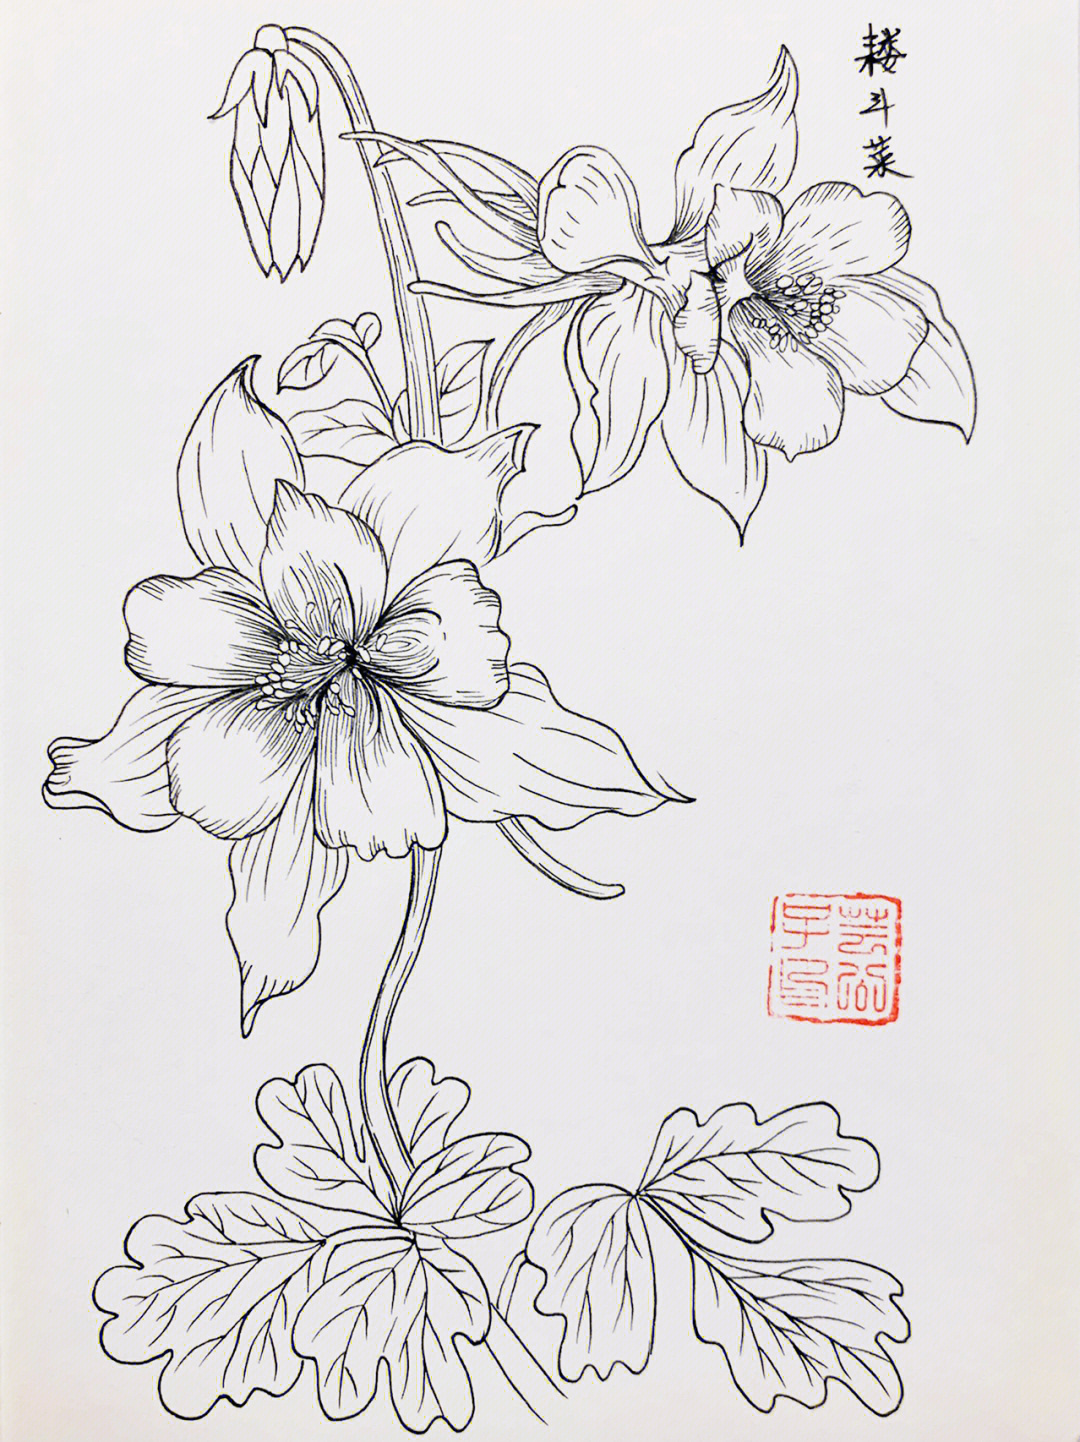 每日一画白描花卉针管笔手绘教程